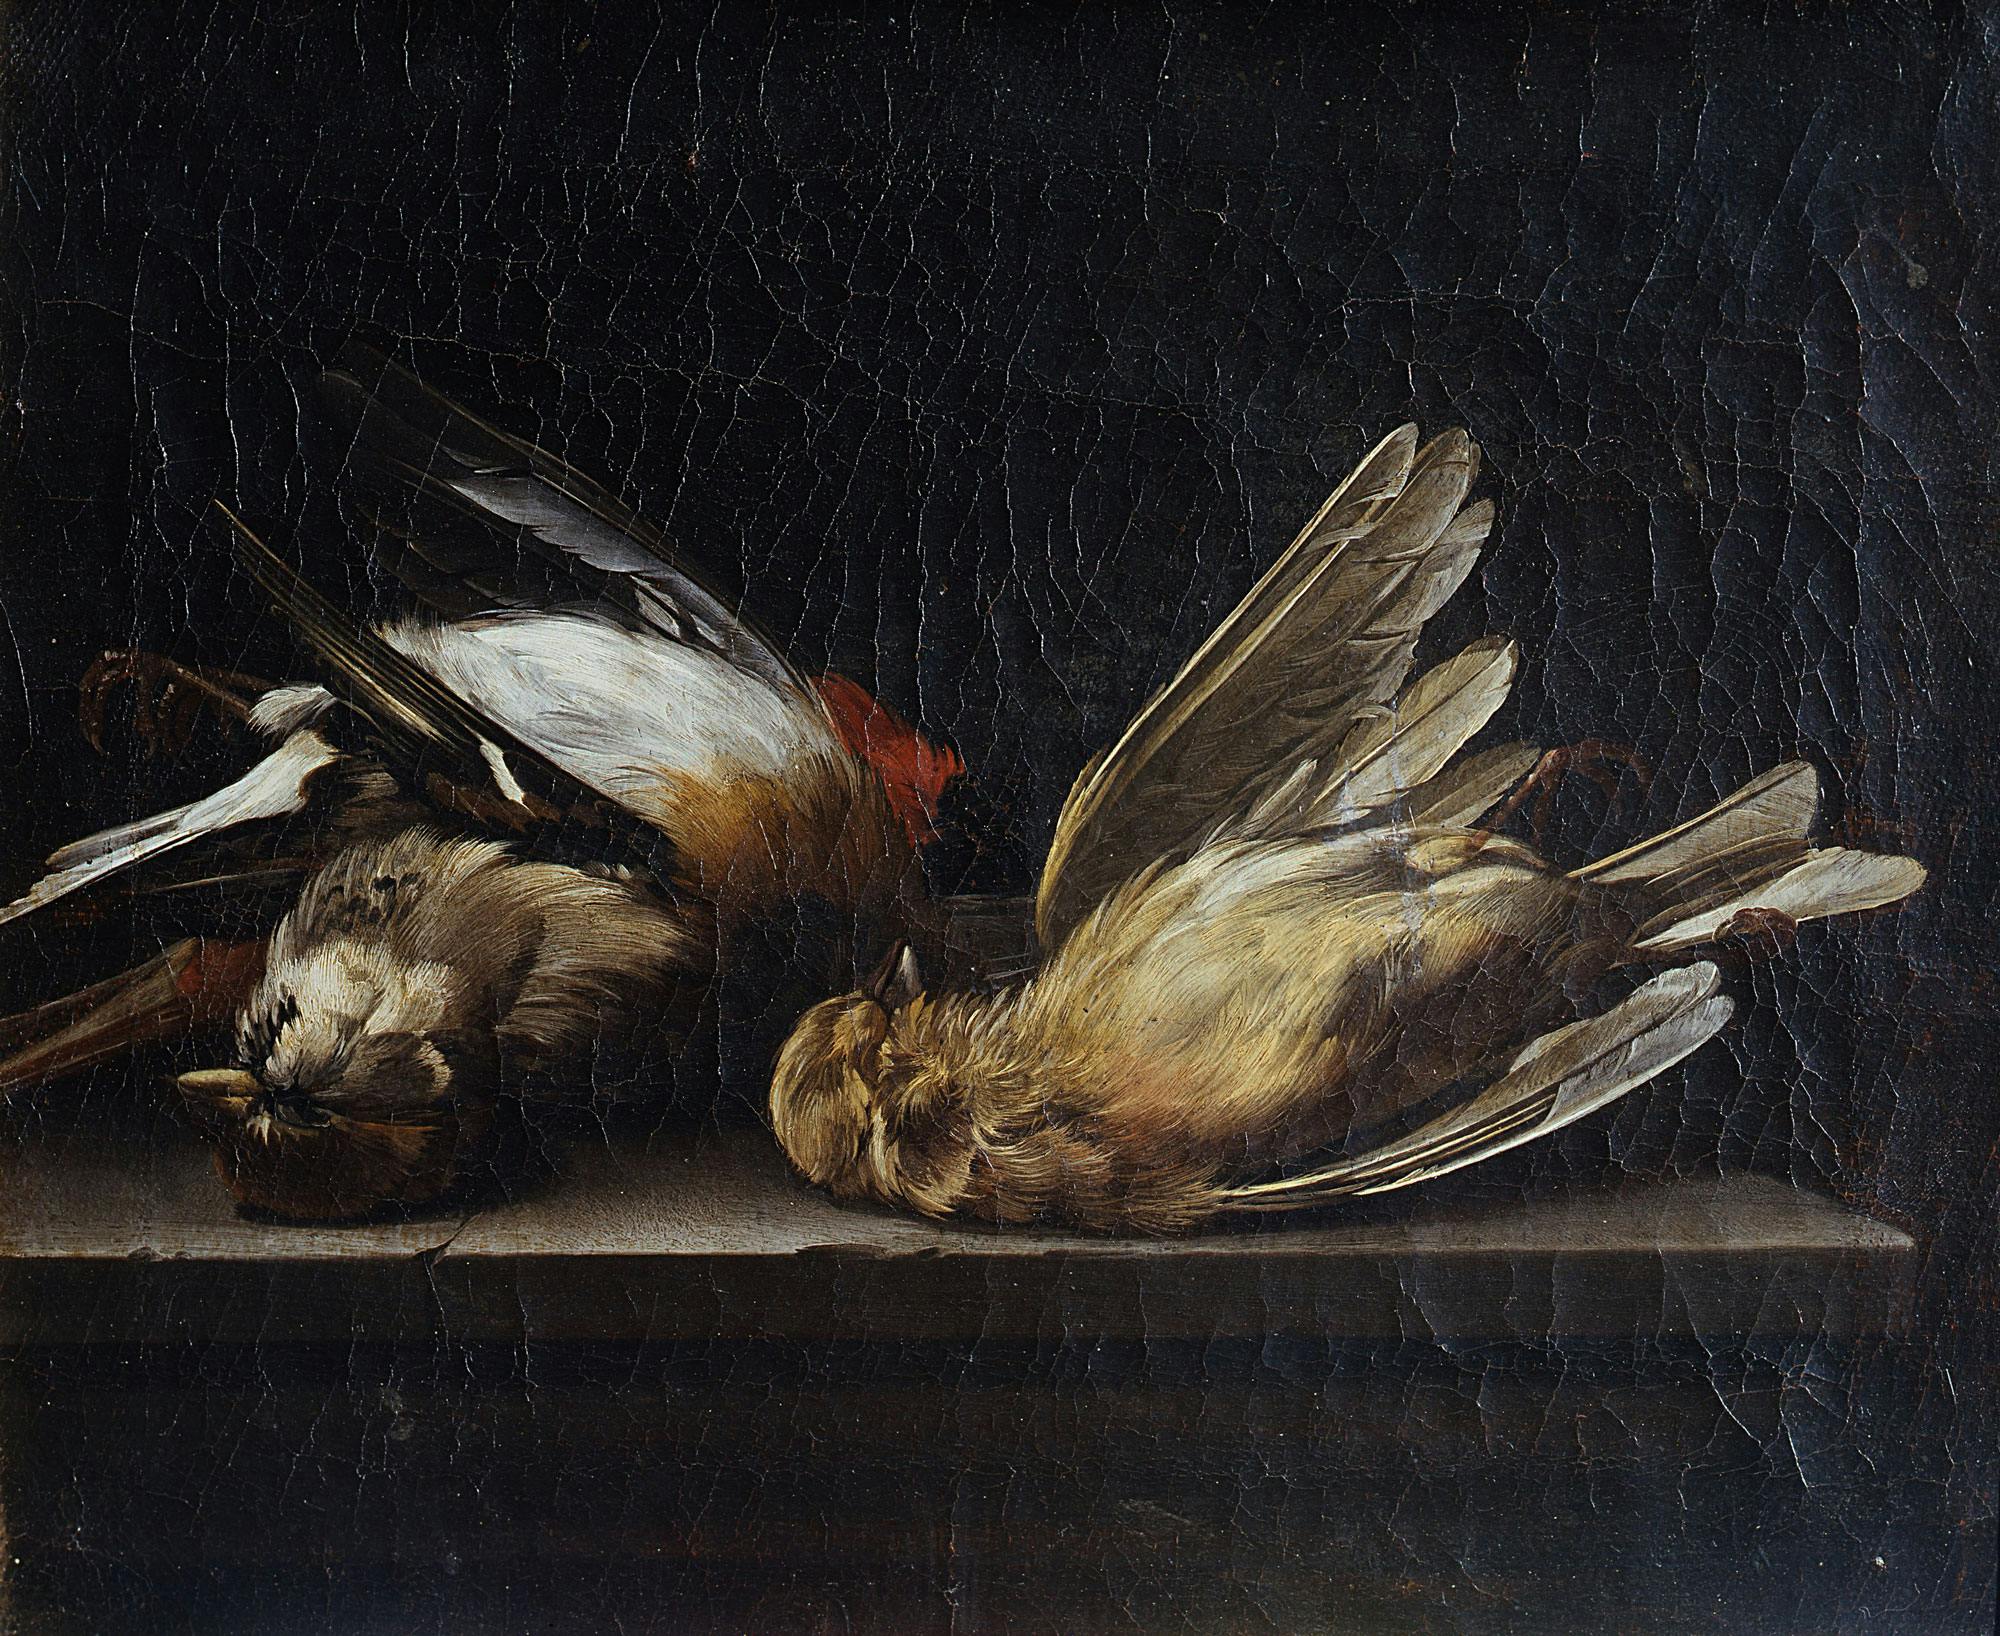 Still life: three dead birds